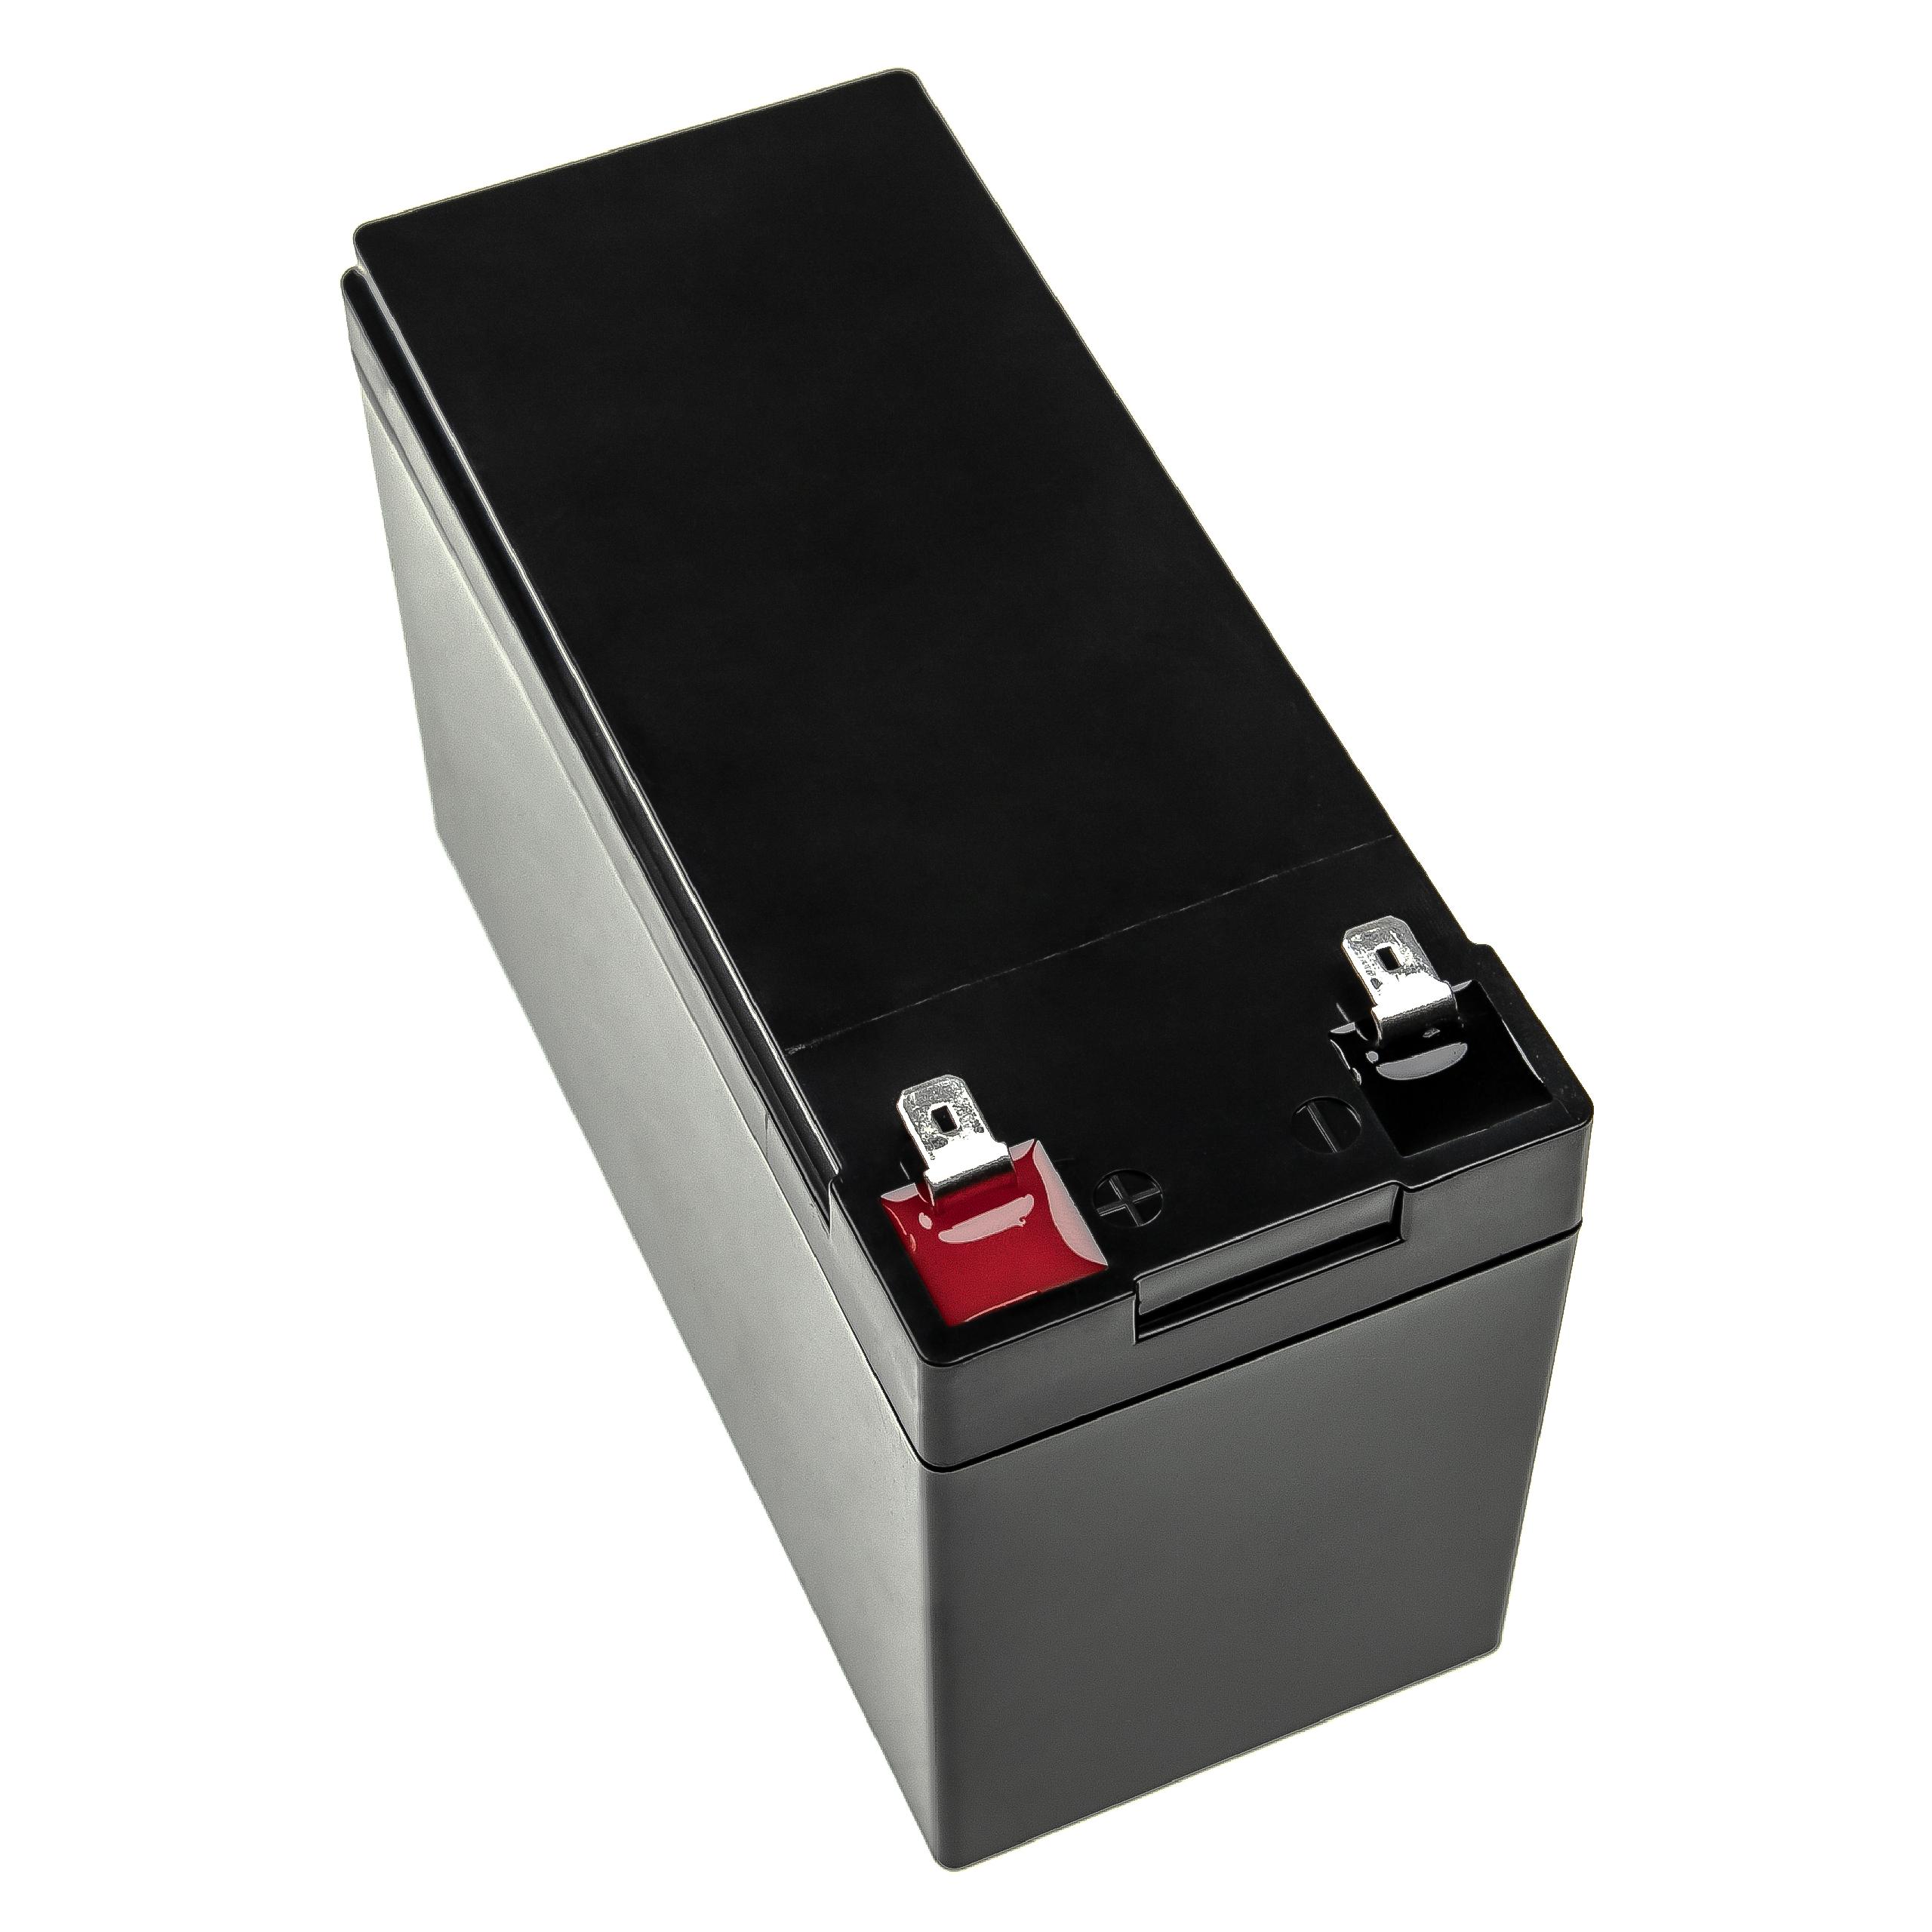 Batterie remplace Flymo 9648645-25 pour outil électrique - 6000 mAh, 12,8 V, LiFePO4